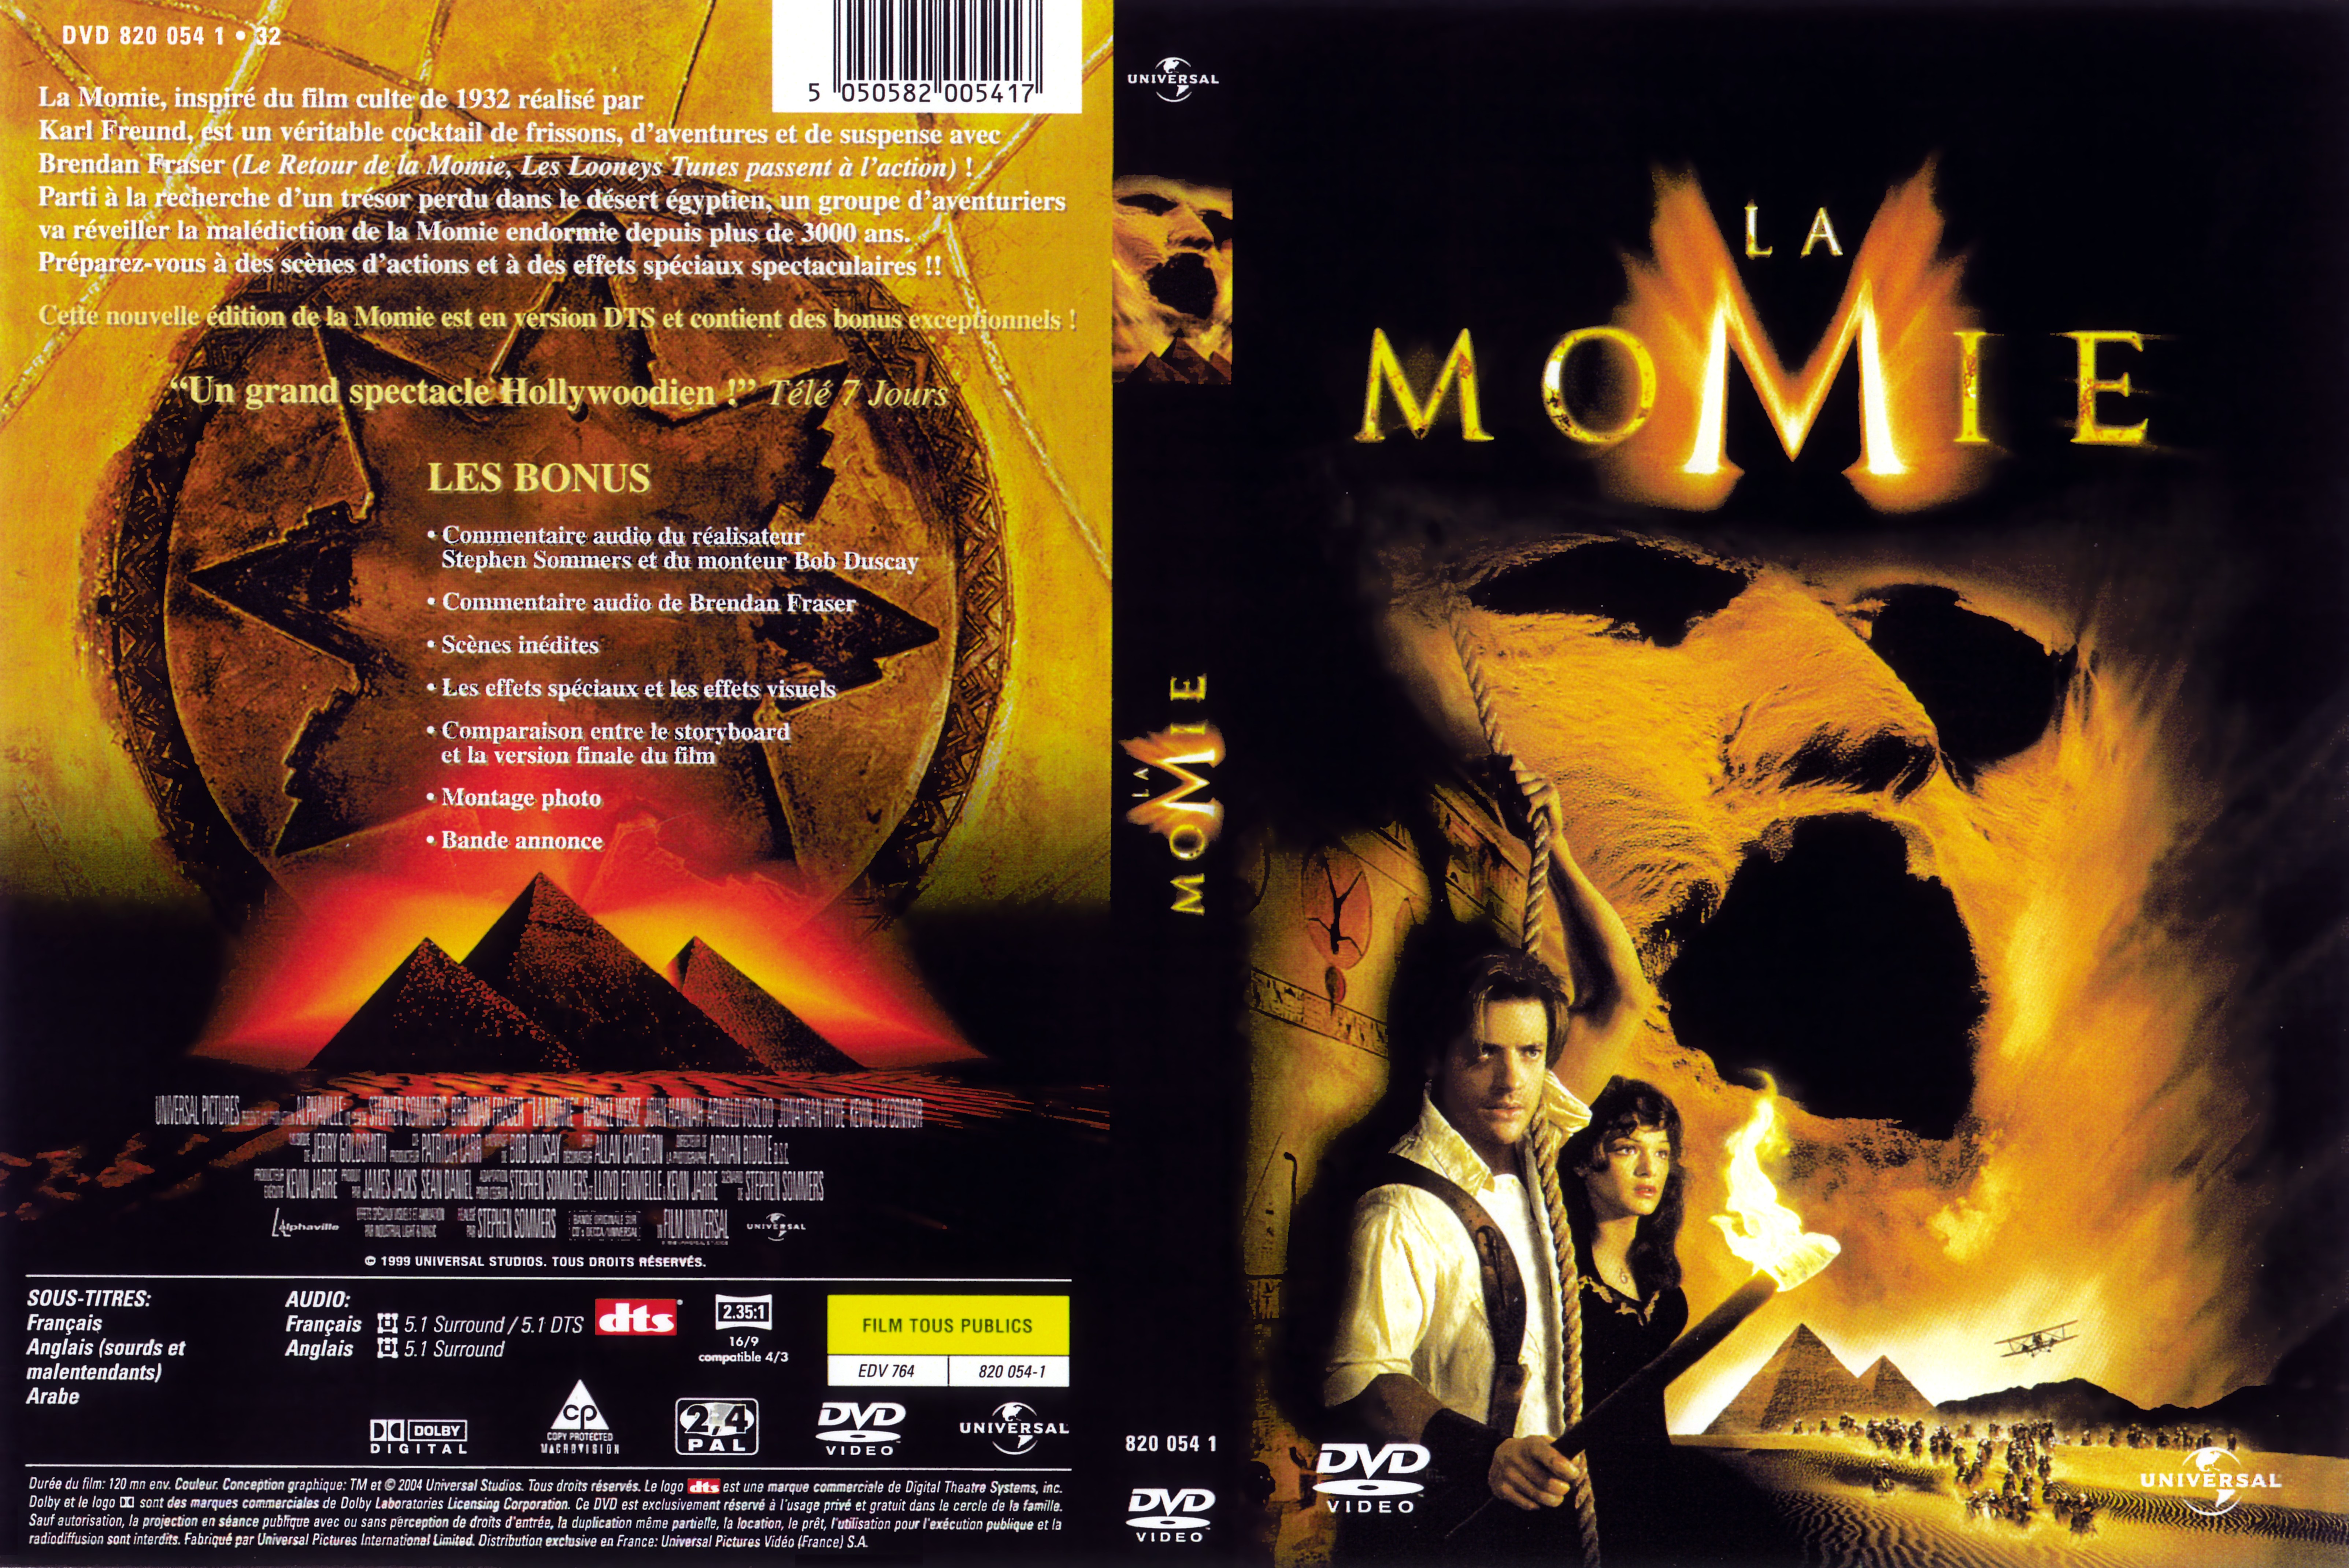 Jaquette DVD La momie v3